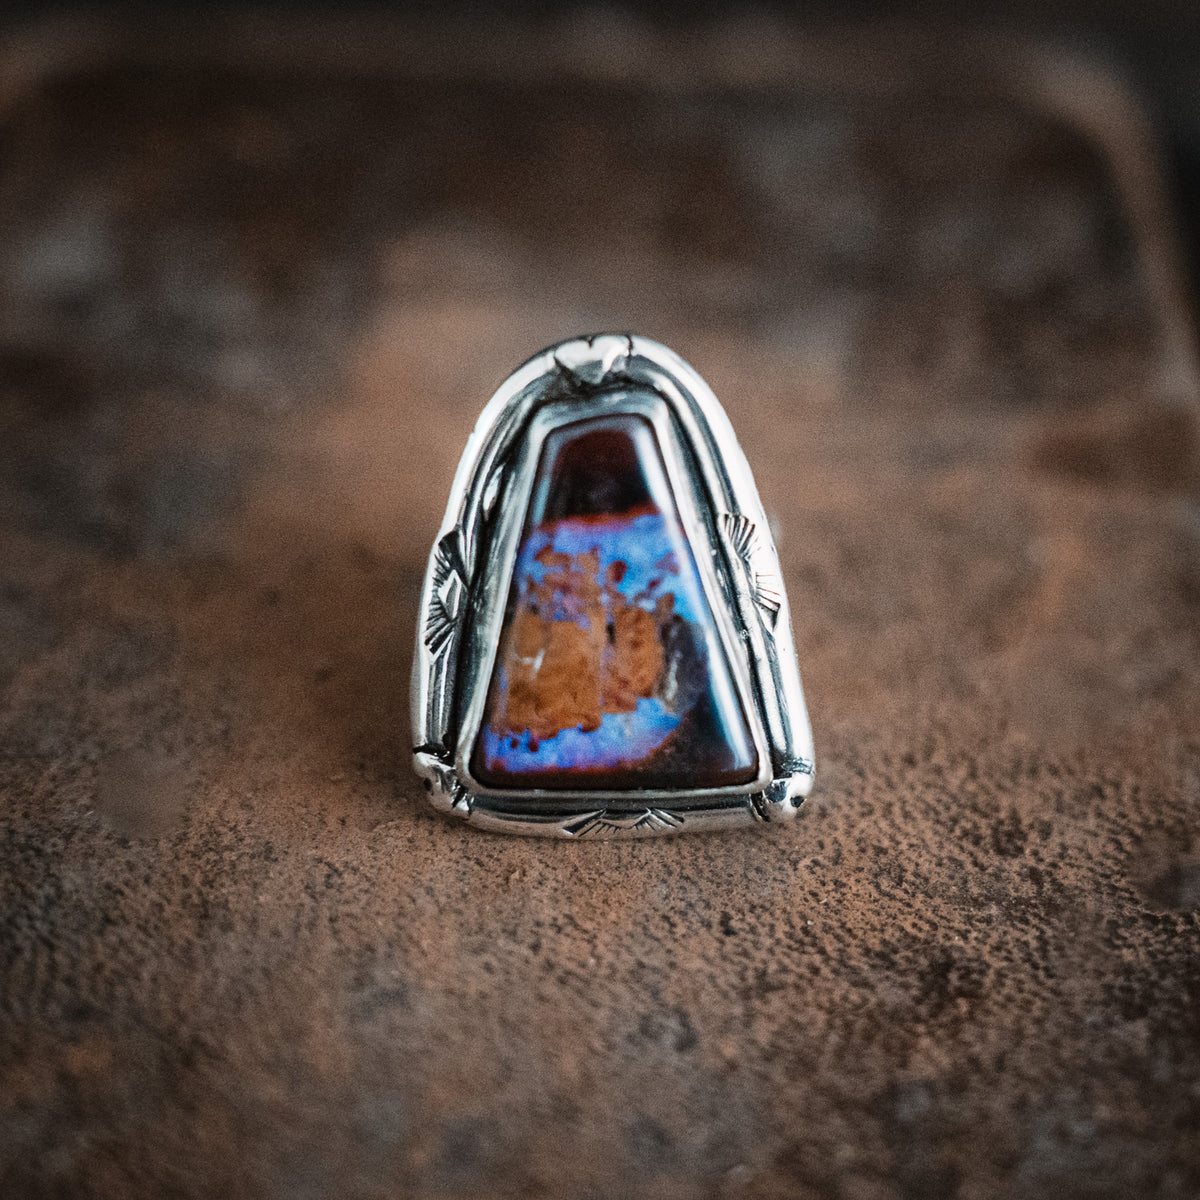 Daybreak Australian Boulder Opal Ring - Size 8.25